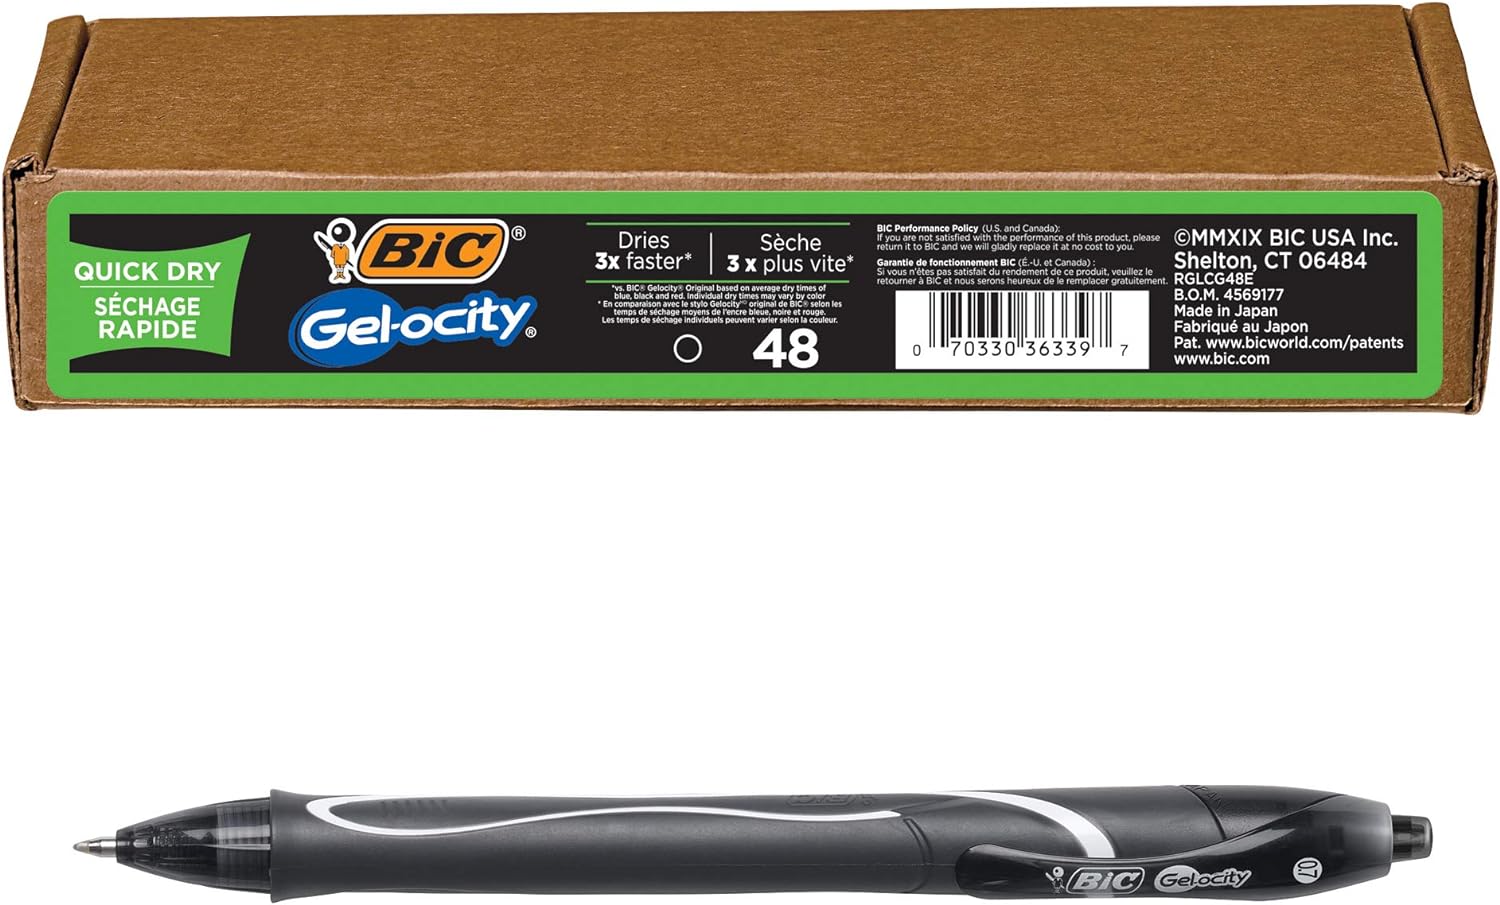 BIC Gel-Ocity Quick Dry Gel Pens, Medium Point Retractable (0.7mm), Black Ink Gel Pen, 48-Count